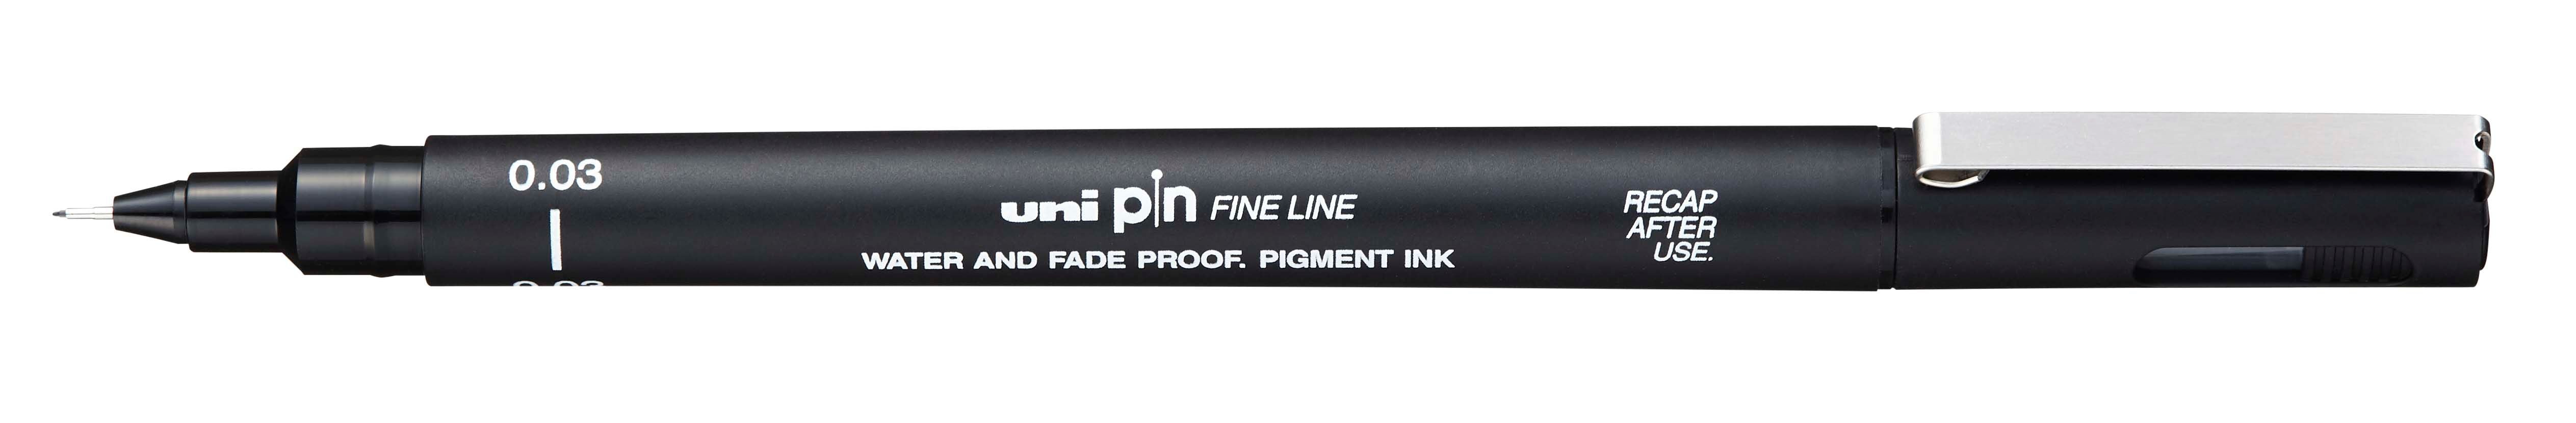 Uni Pin Fine Line Black Waterproof Drawing Pen 0.03mm. ( Ultra Fine Line )The Uni Pin pen range offer fade waterproof ink